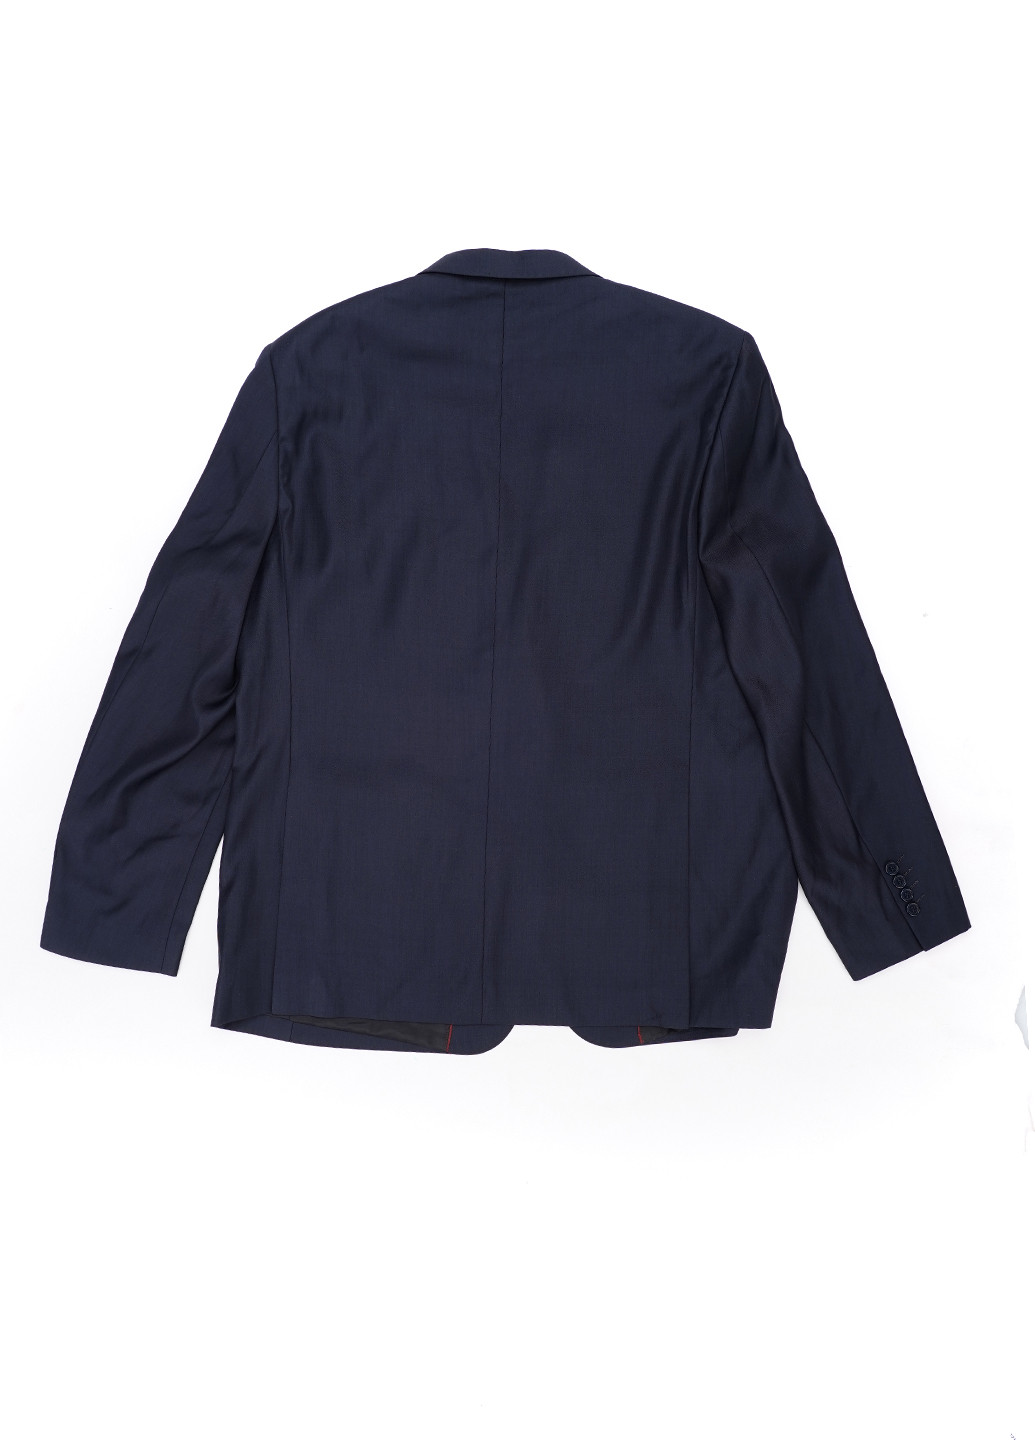 Темно-синий демисезонный костюм (пиджак, брюки) брючный Torrente